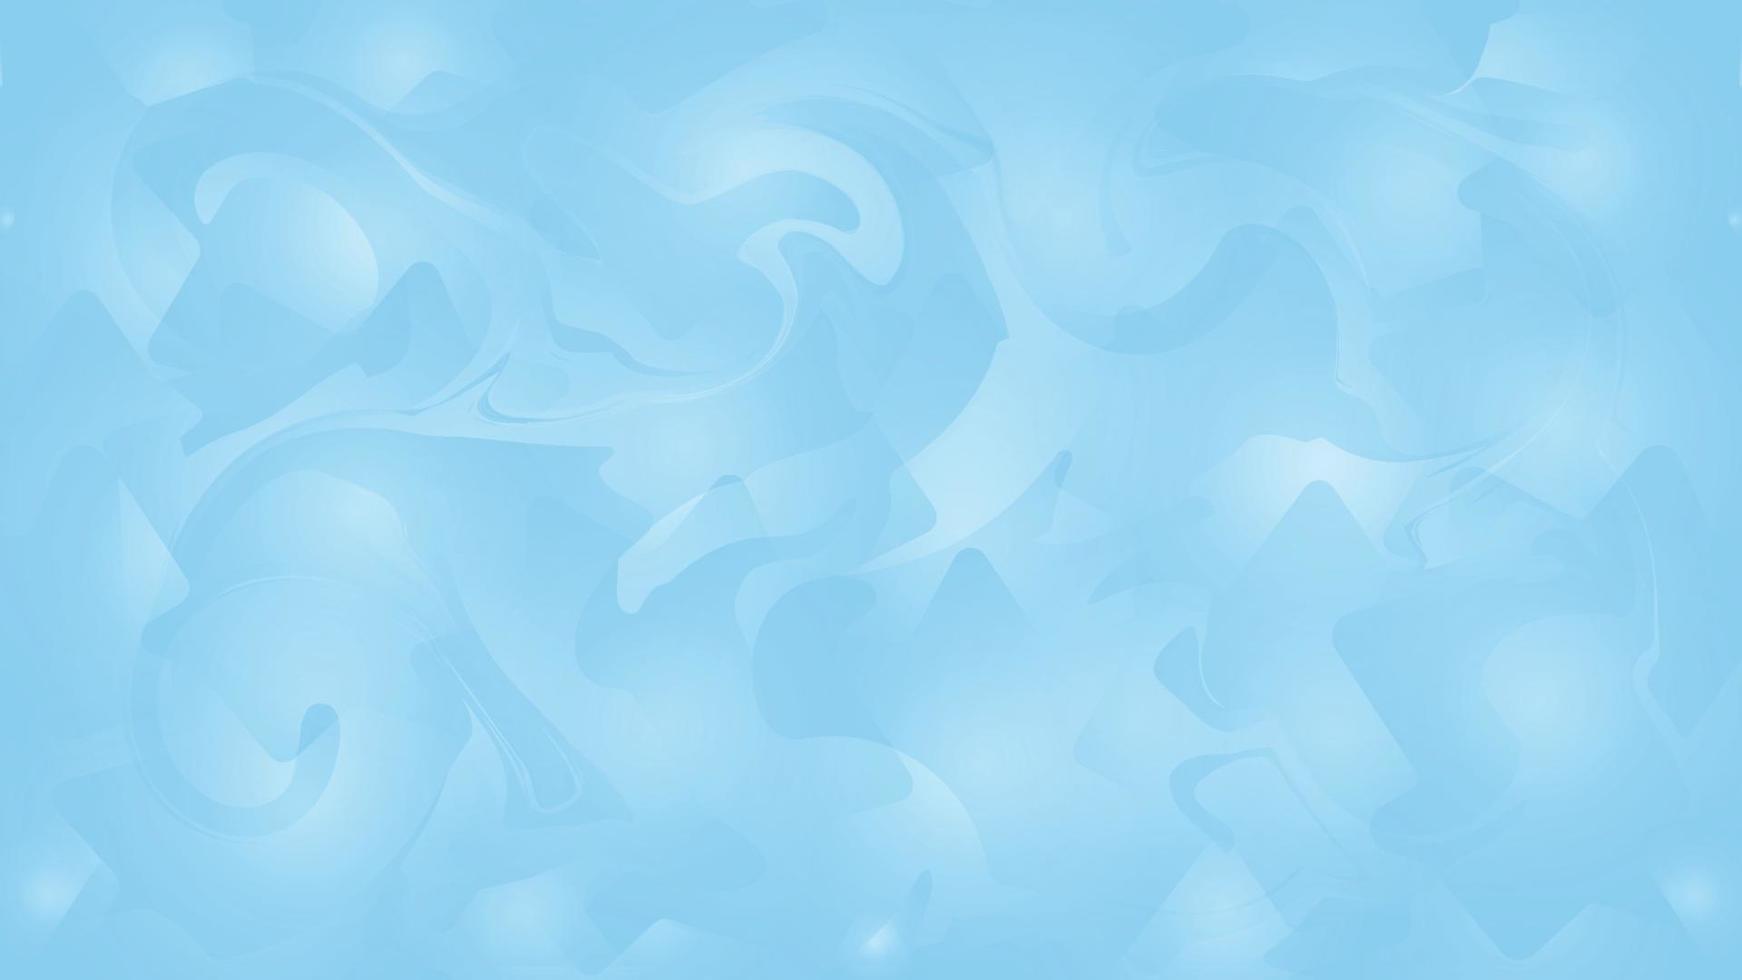 abstract blauw achtergrond met bubbels, aqua blauw zacht structuur helling achtergrond vector